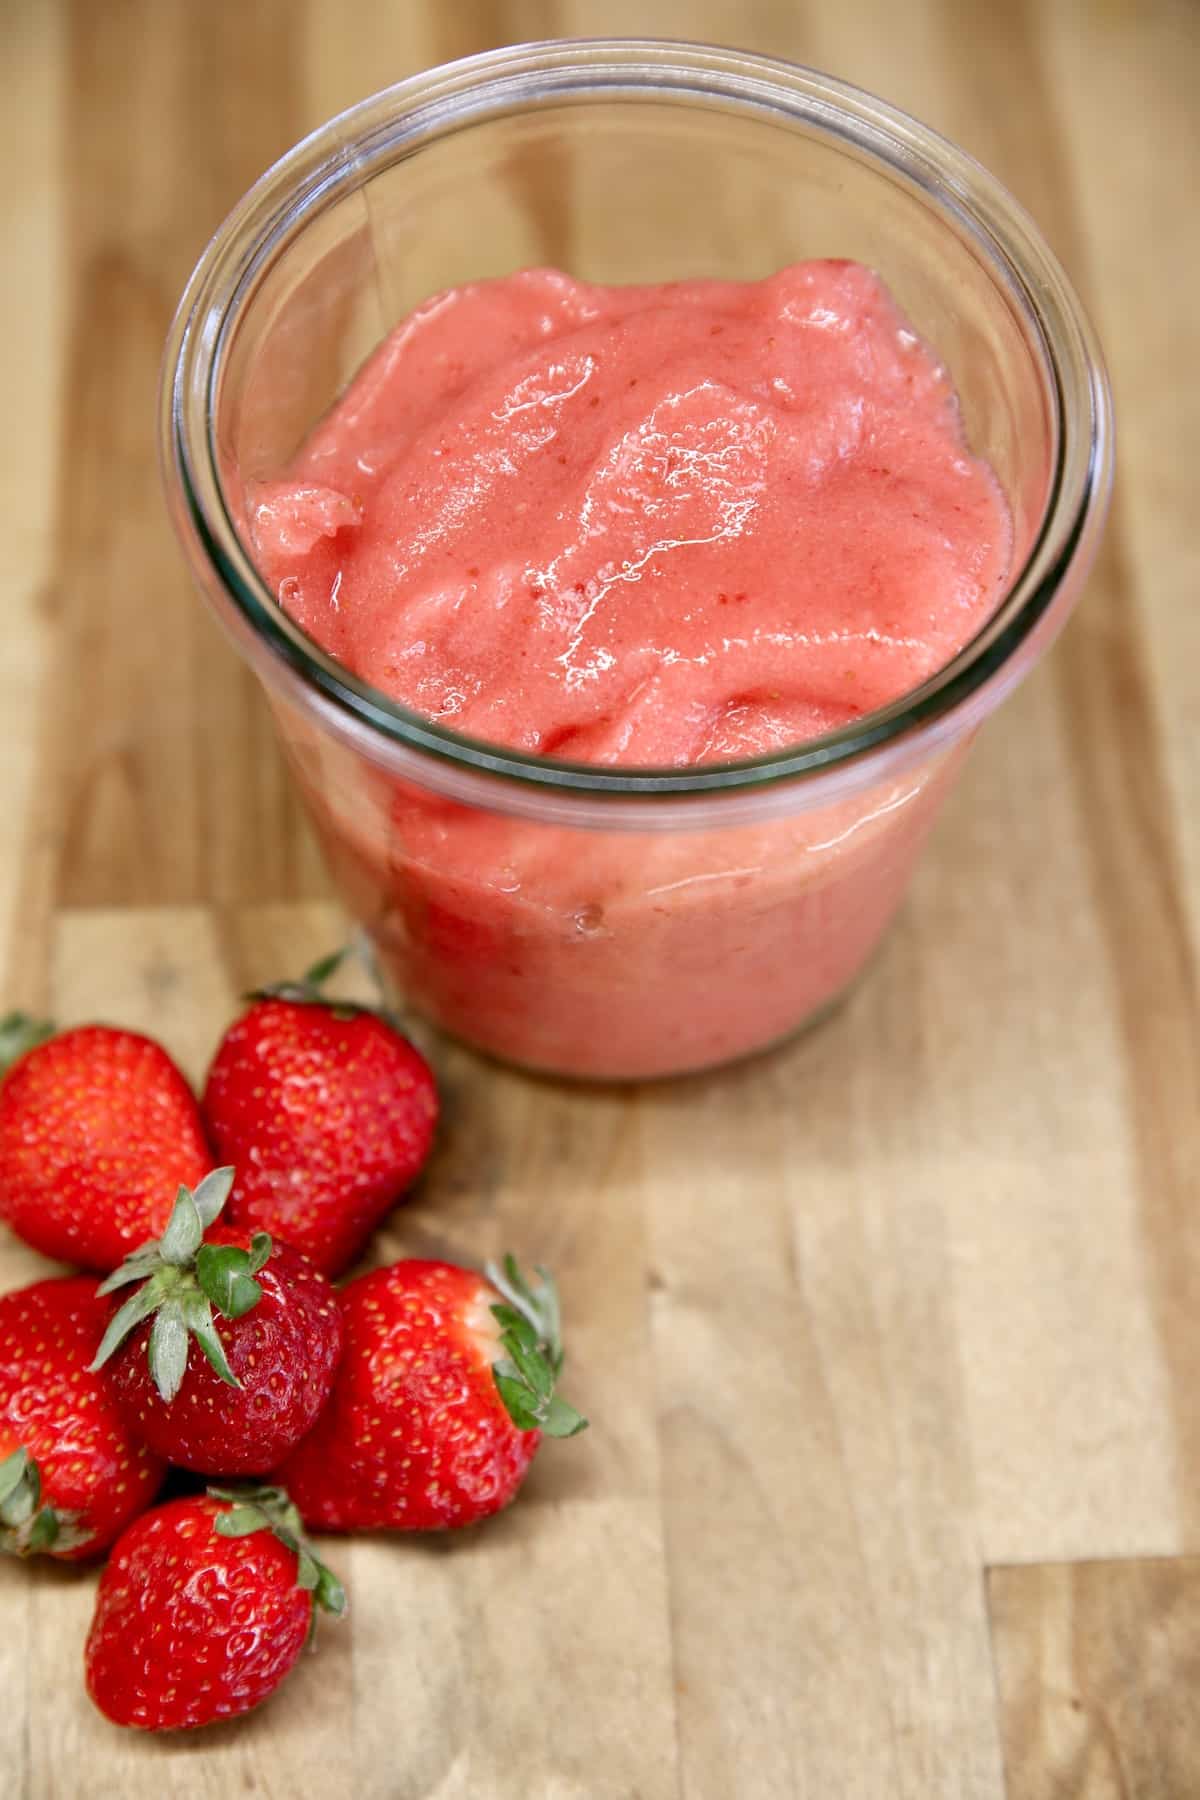 Jar of strawberry puree and fresh strawberries.